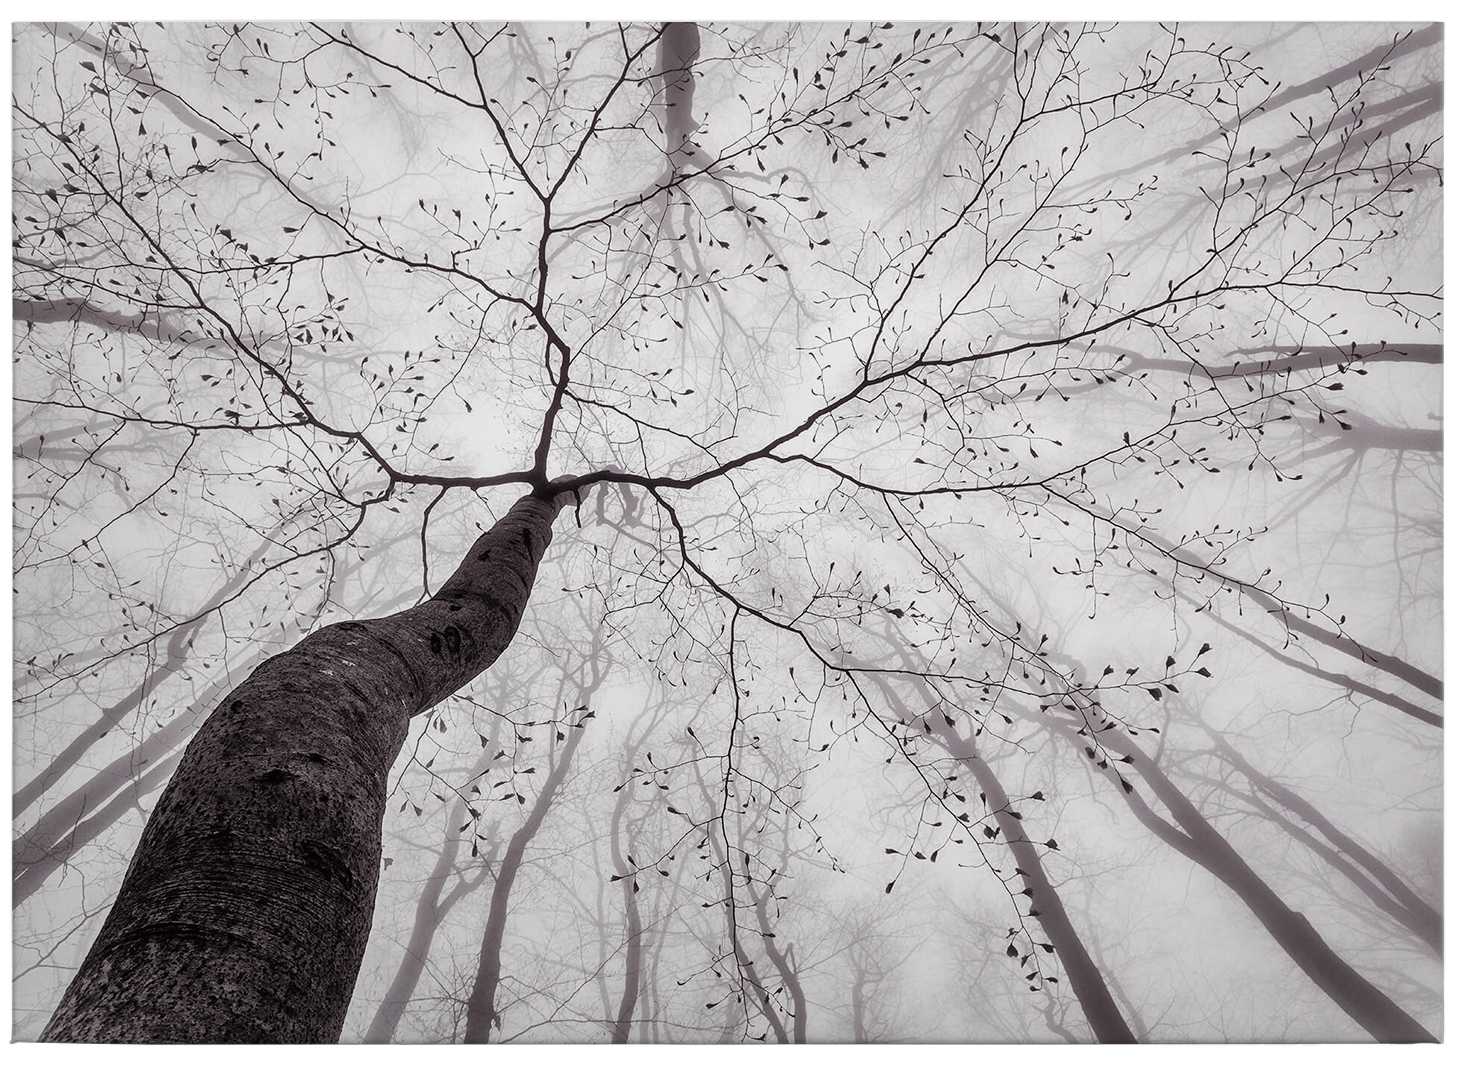             Cuadro en lienzo blanco y negro Copas de árboles en la niebla - 0,70 m x 0,50 m
        